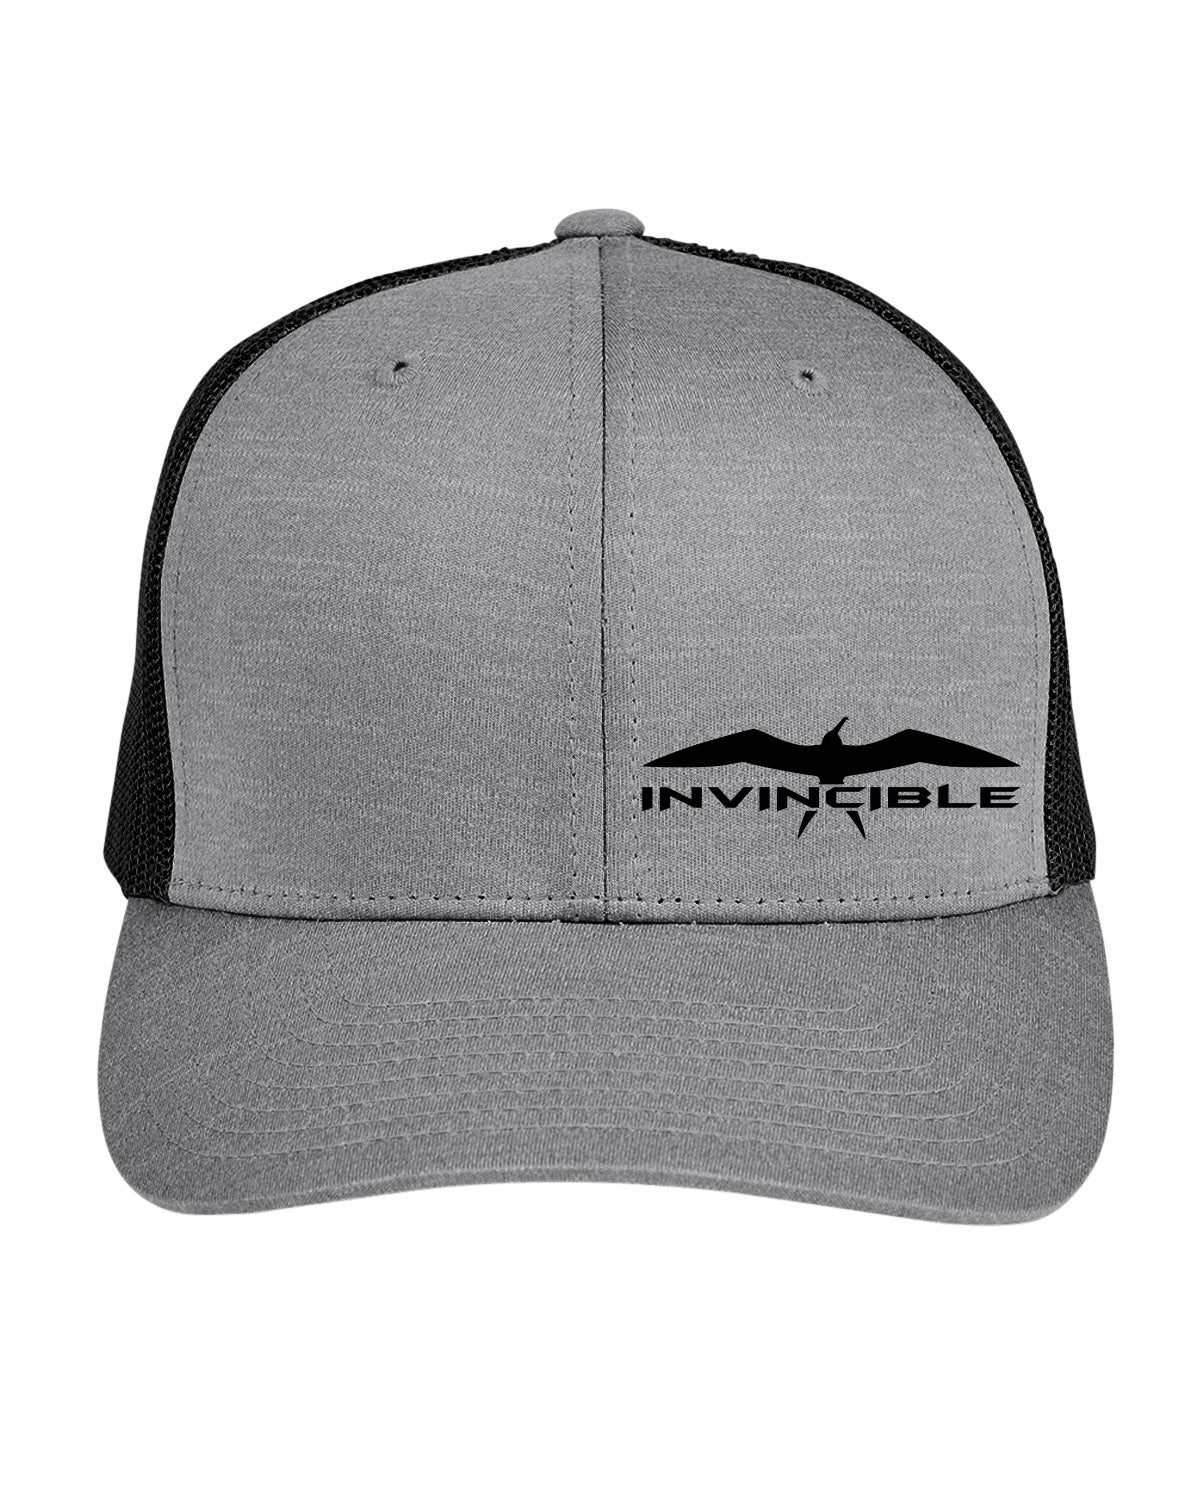 Invincible Grey/Black Trucker Hat